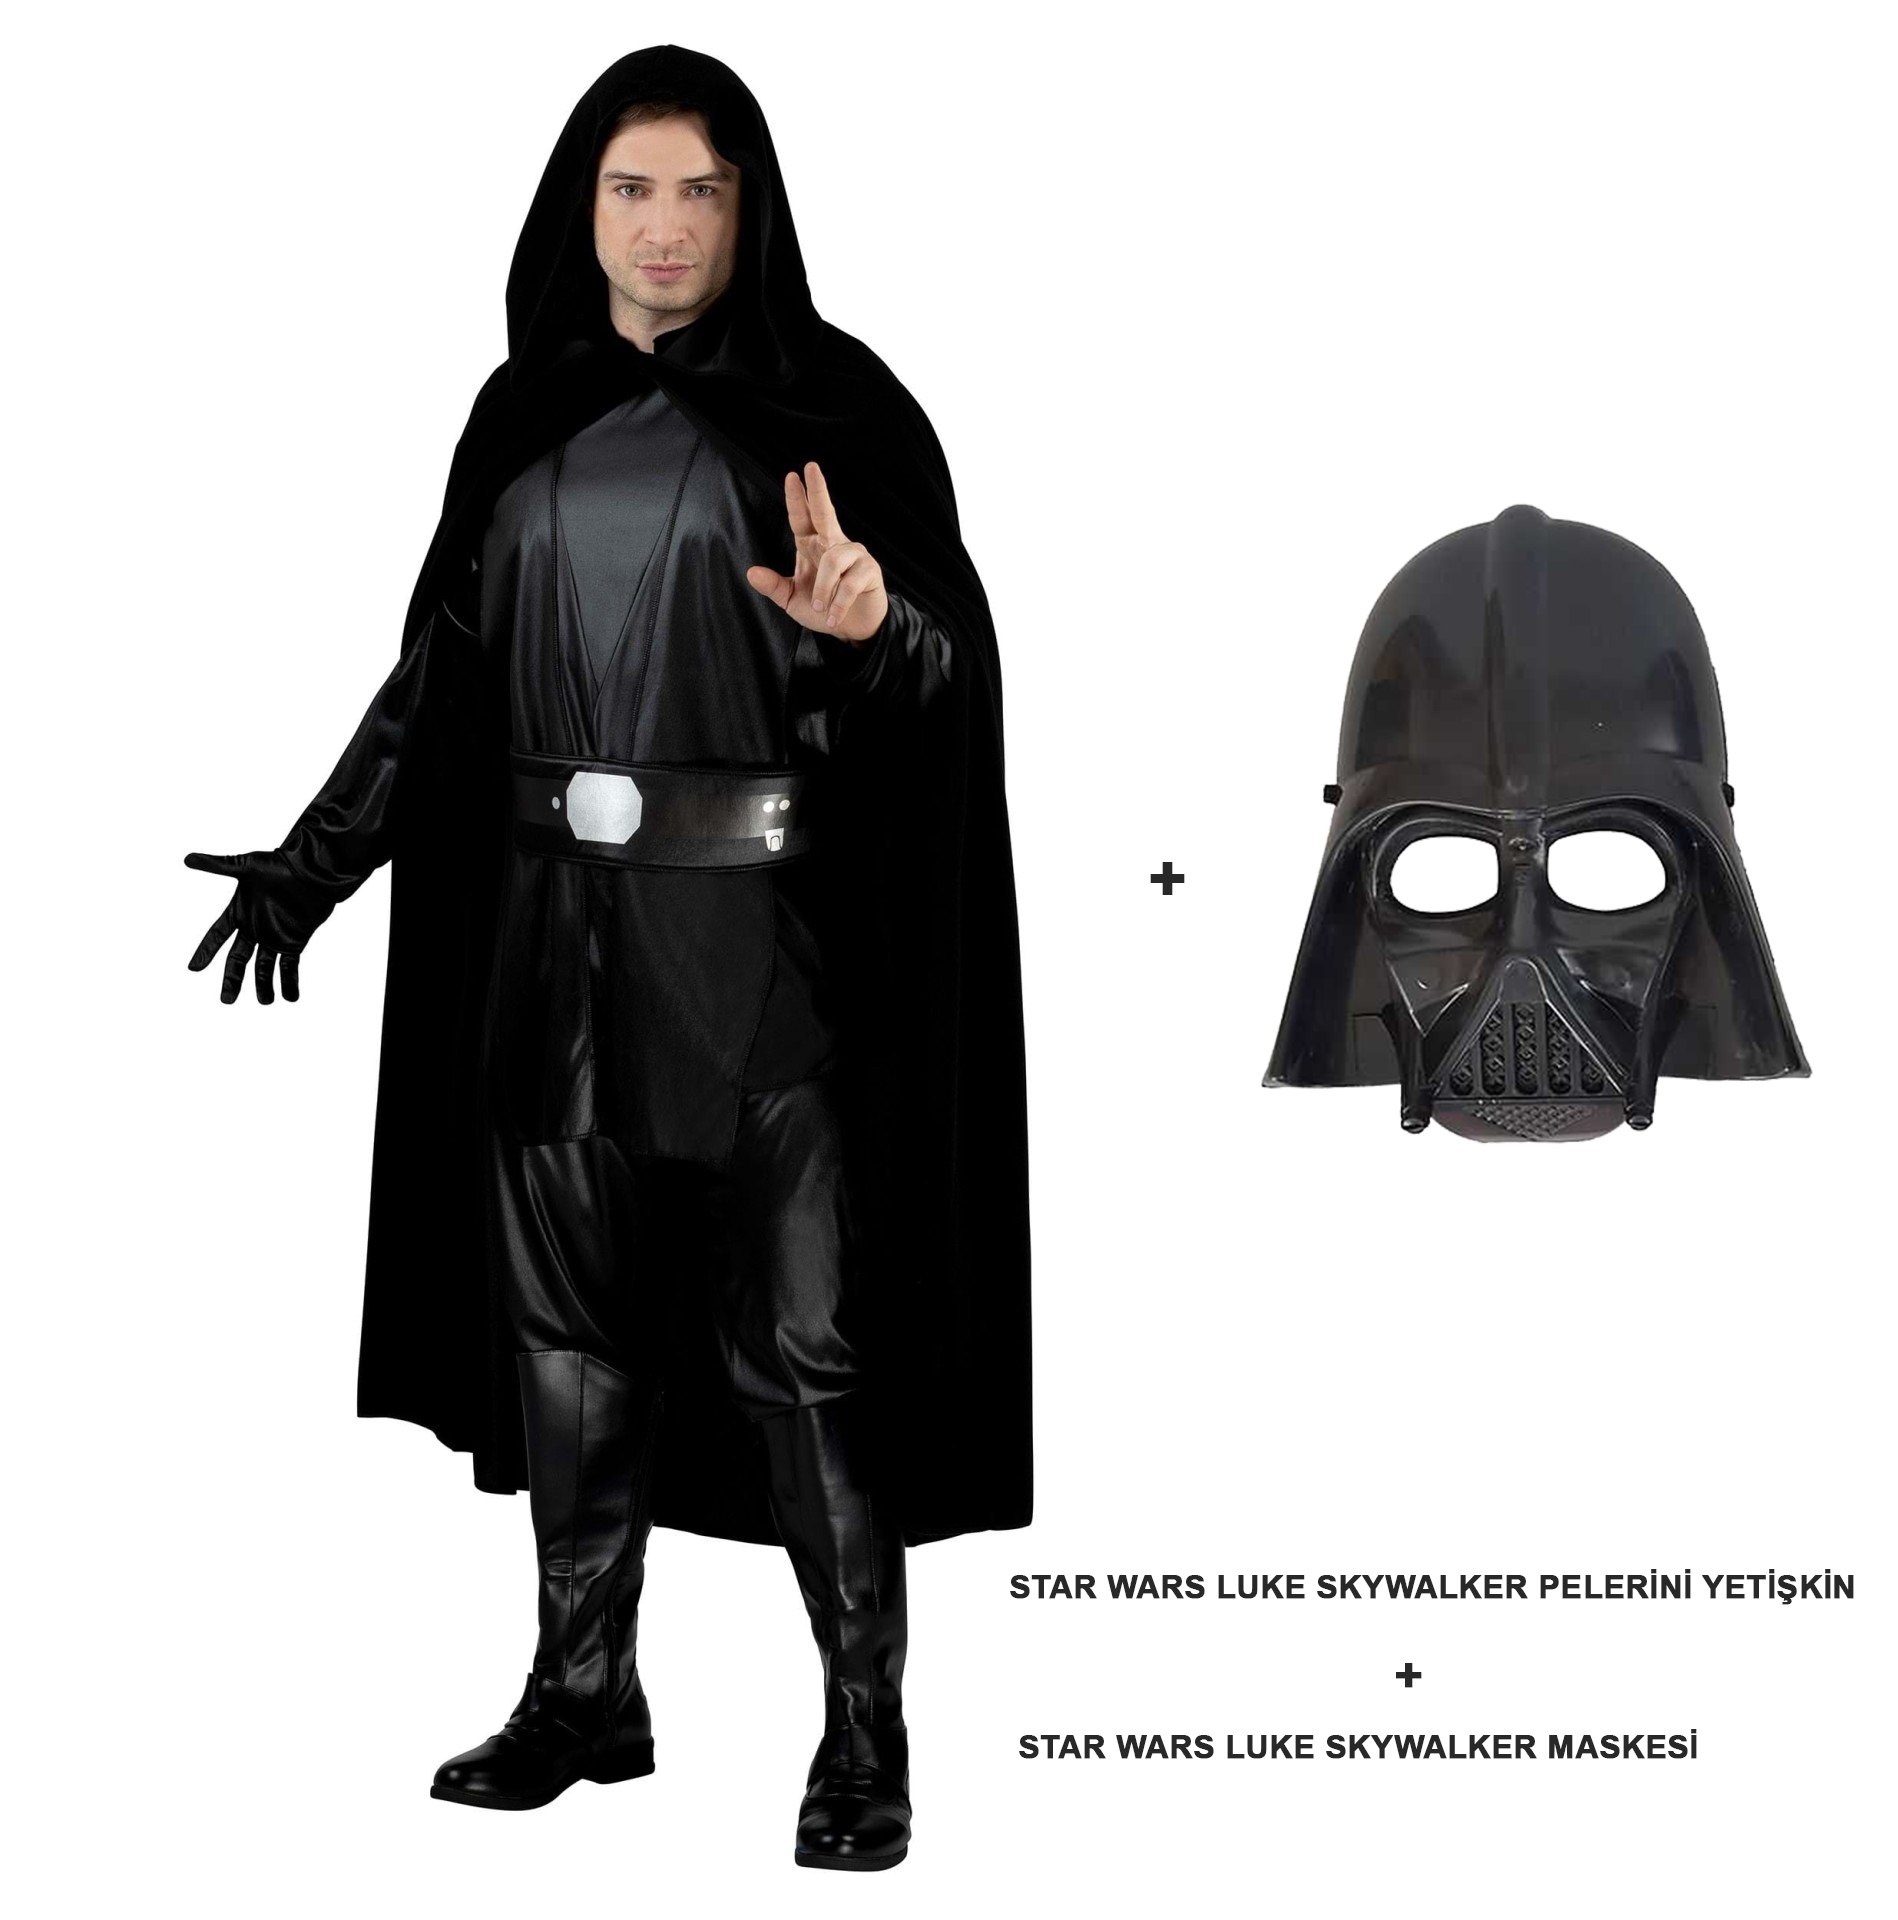 Star Wars Luke Skywalker Pelerini Yetişkin Ve Maskesi (CLZ)